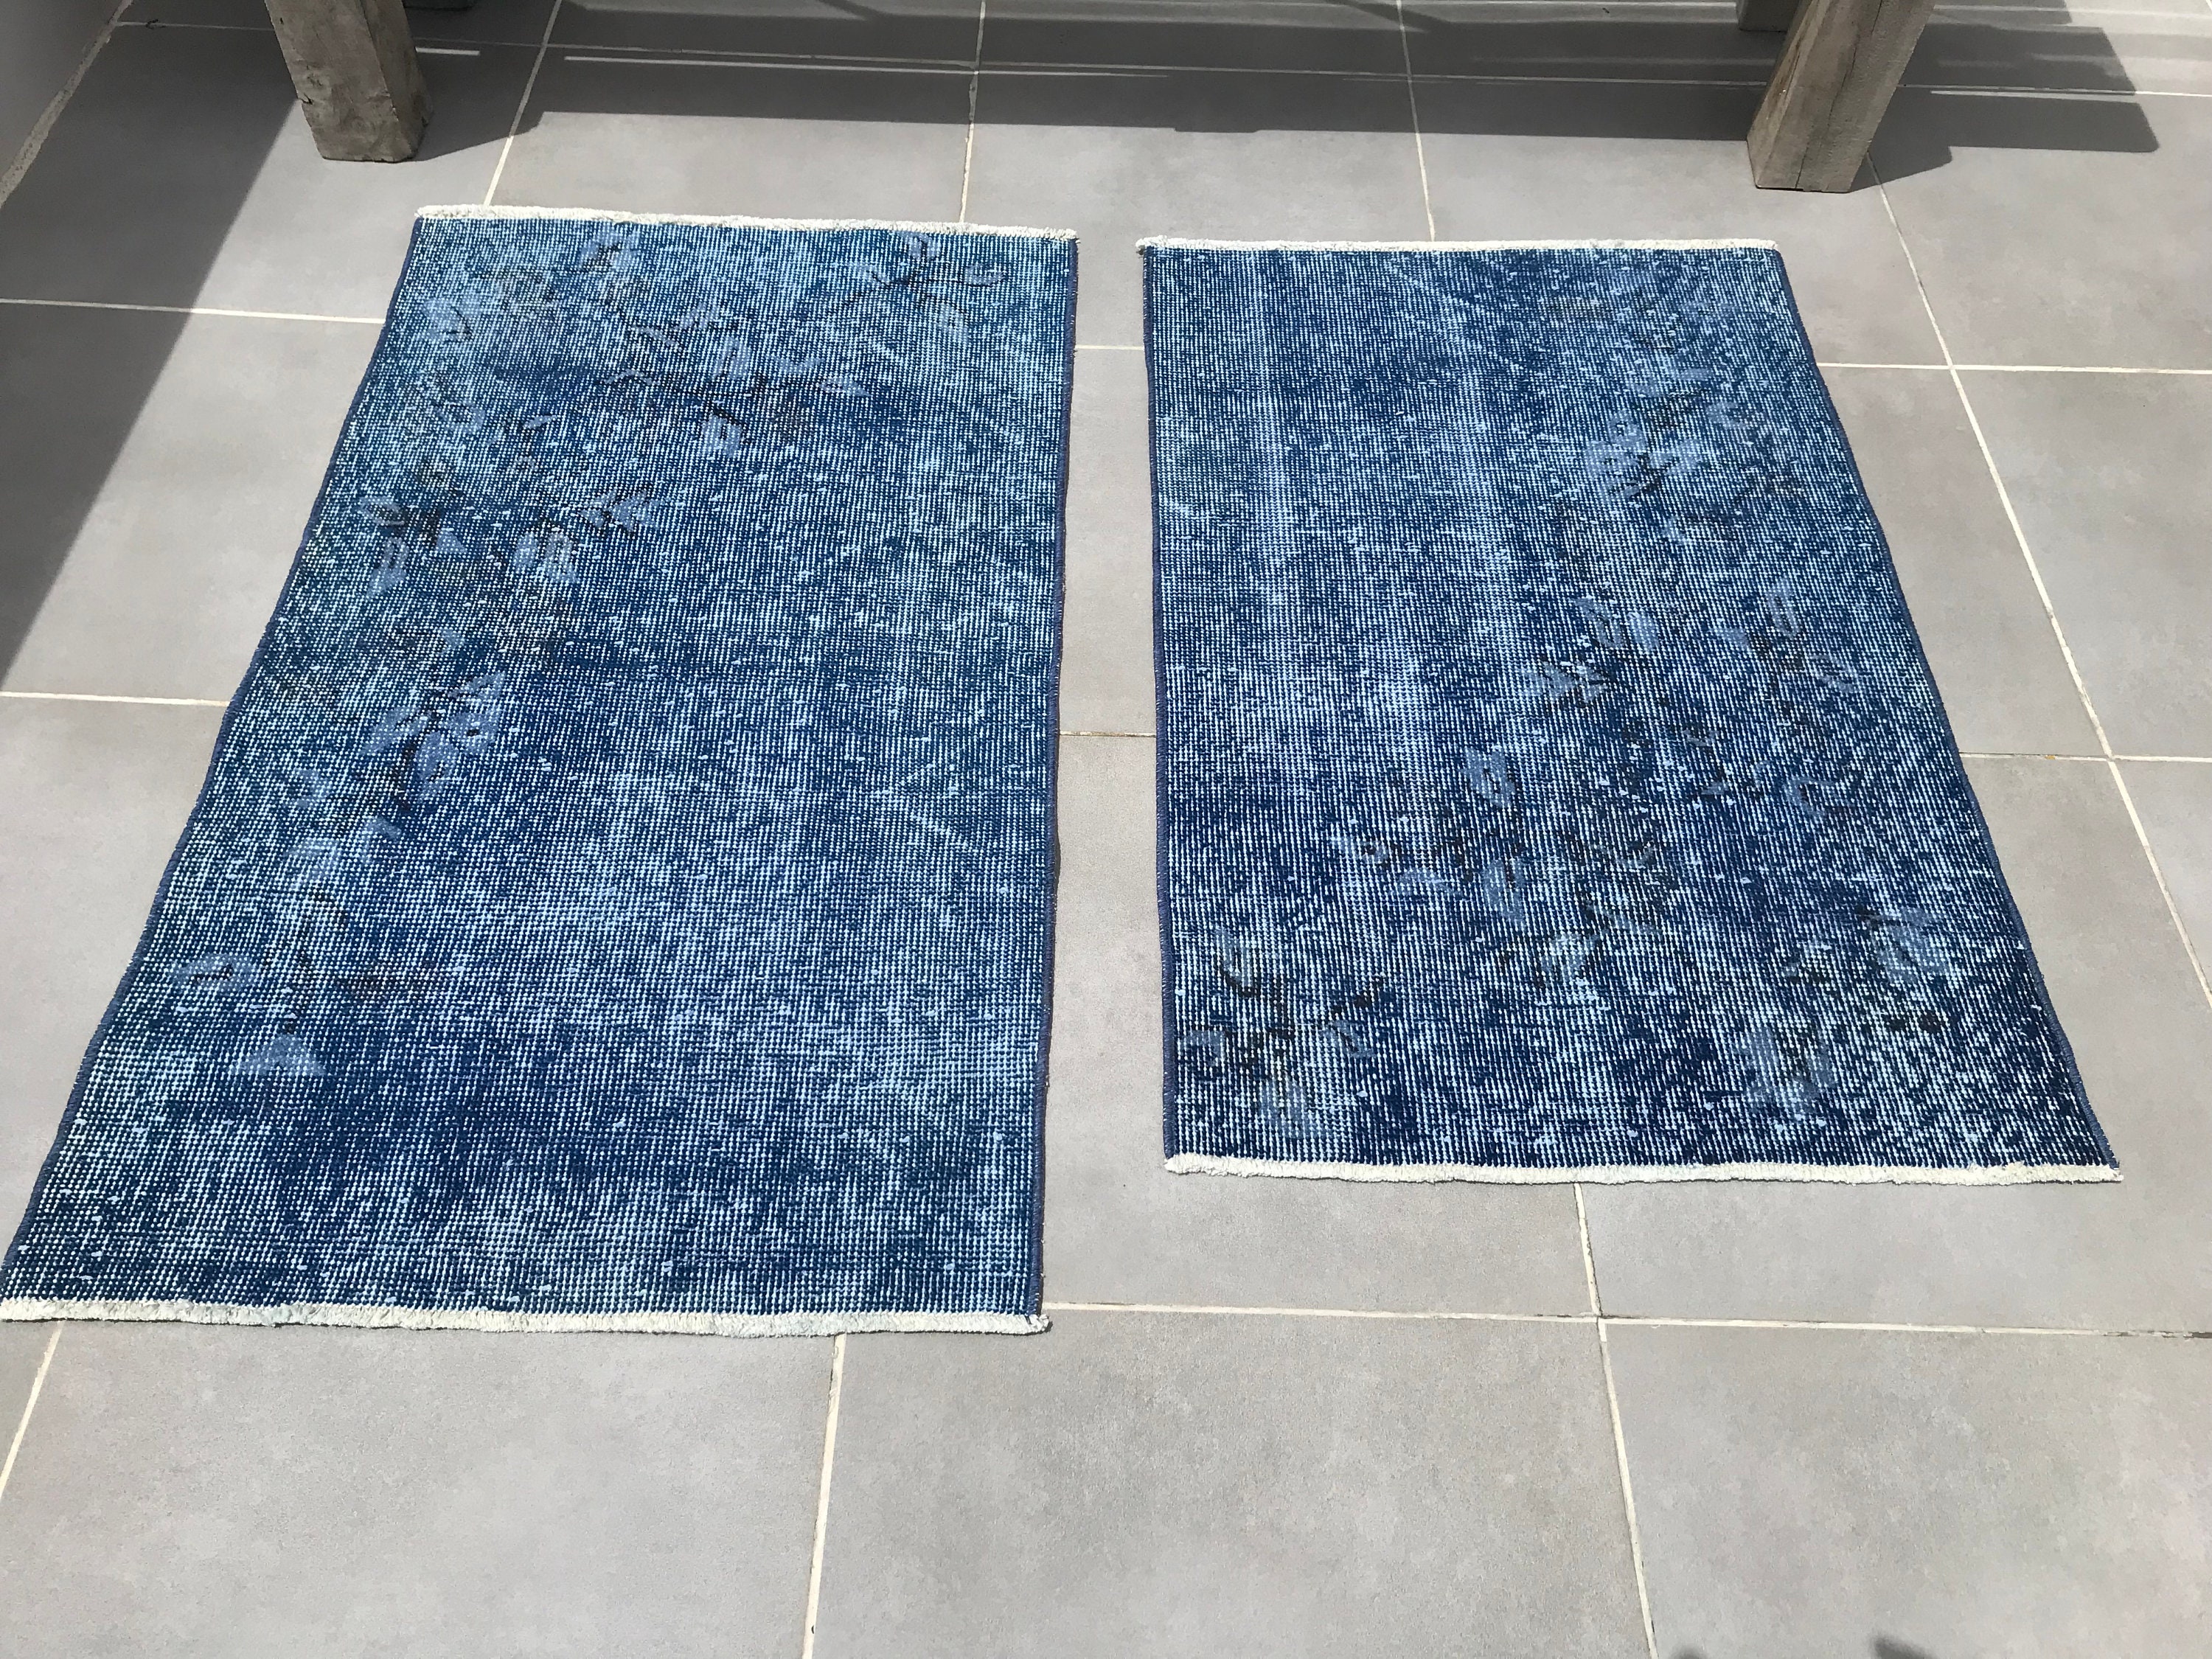 LYNDERUP Door mat, indoor/outdoor multicolor, 2 ' 0x2 ' 11 - IKEA